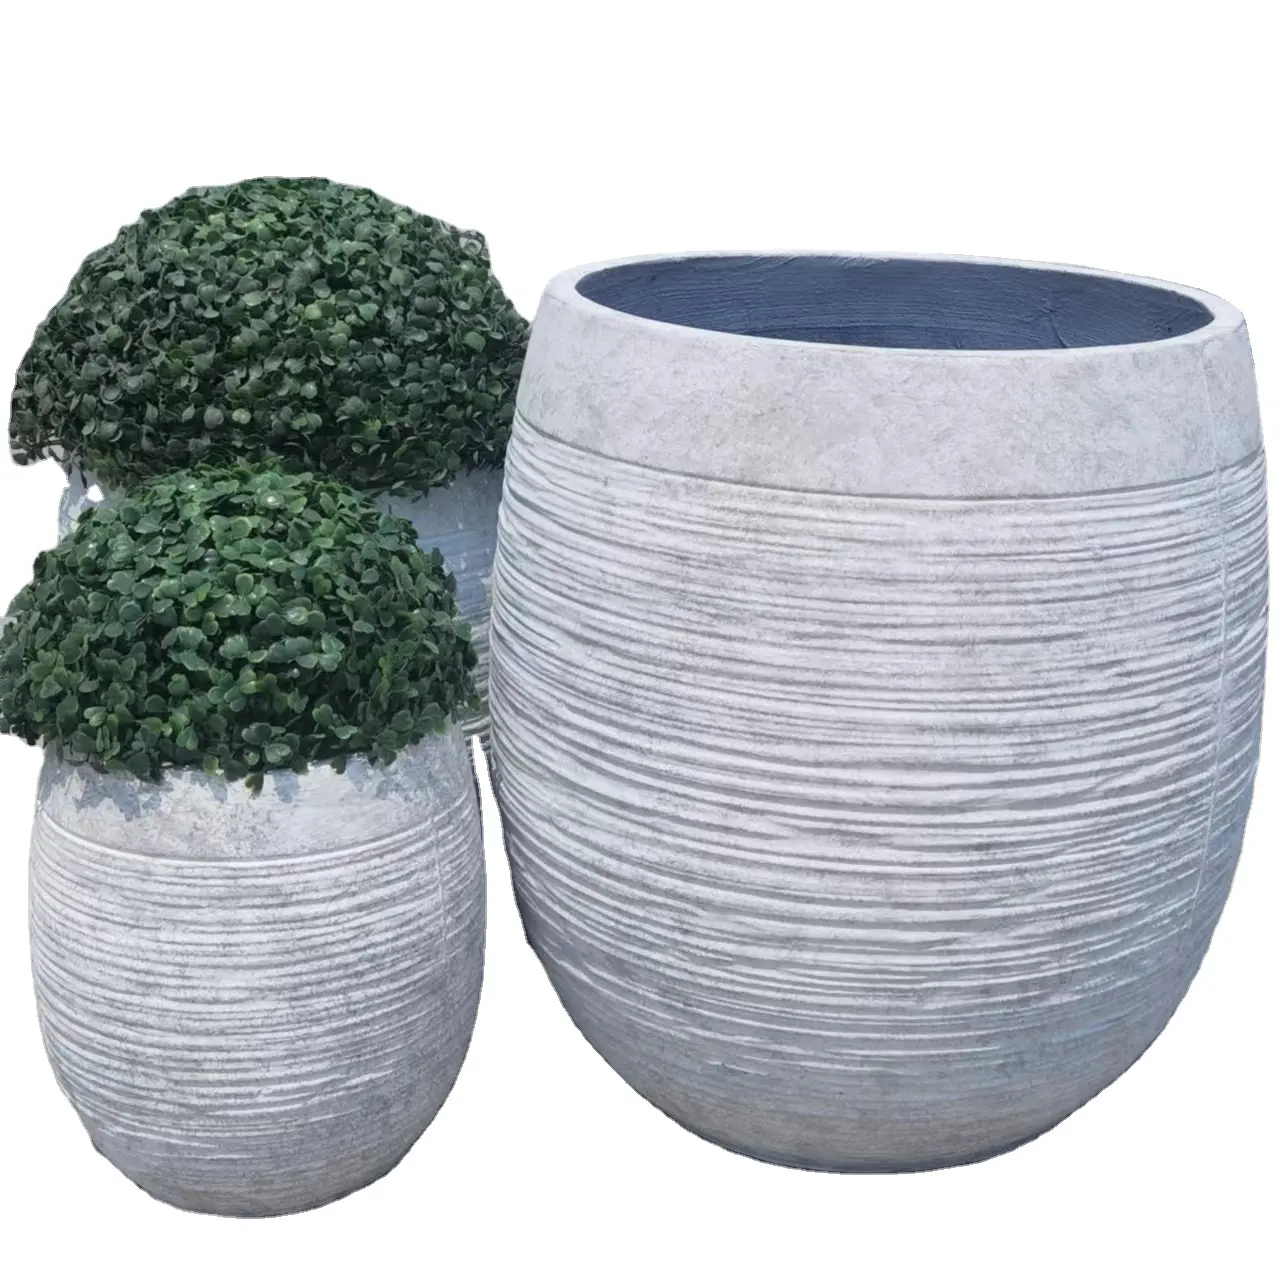 Wit cement bloempot met decoratieve strepen keramische planters